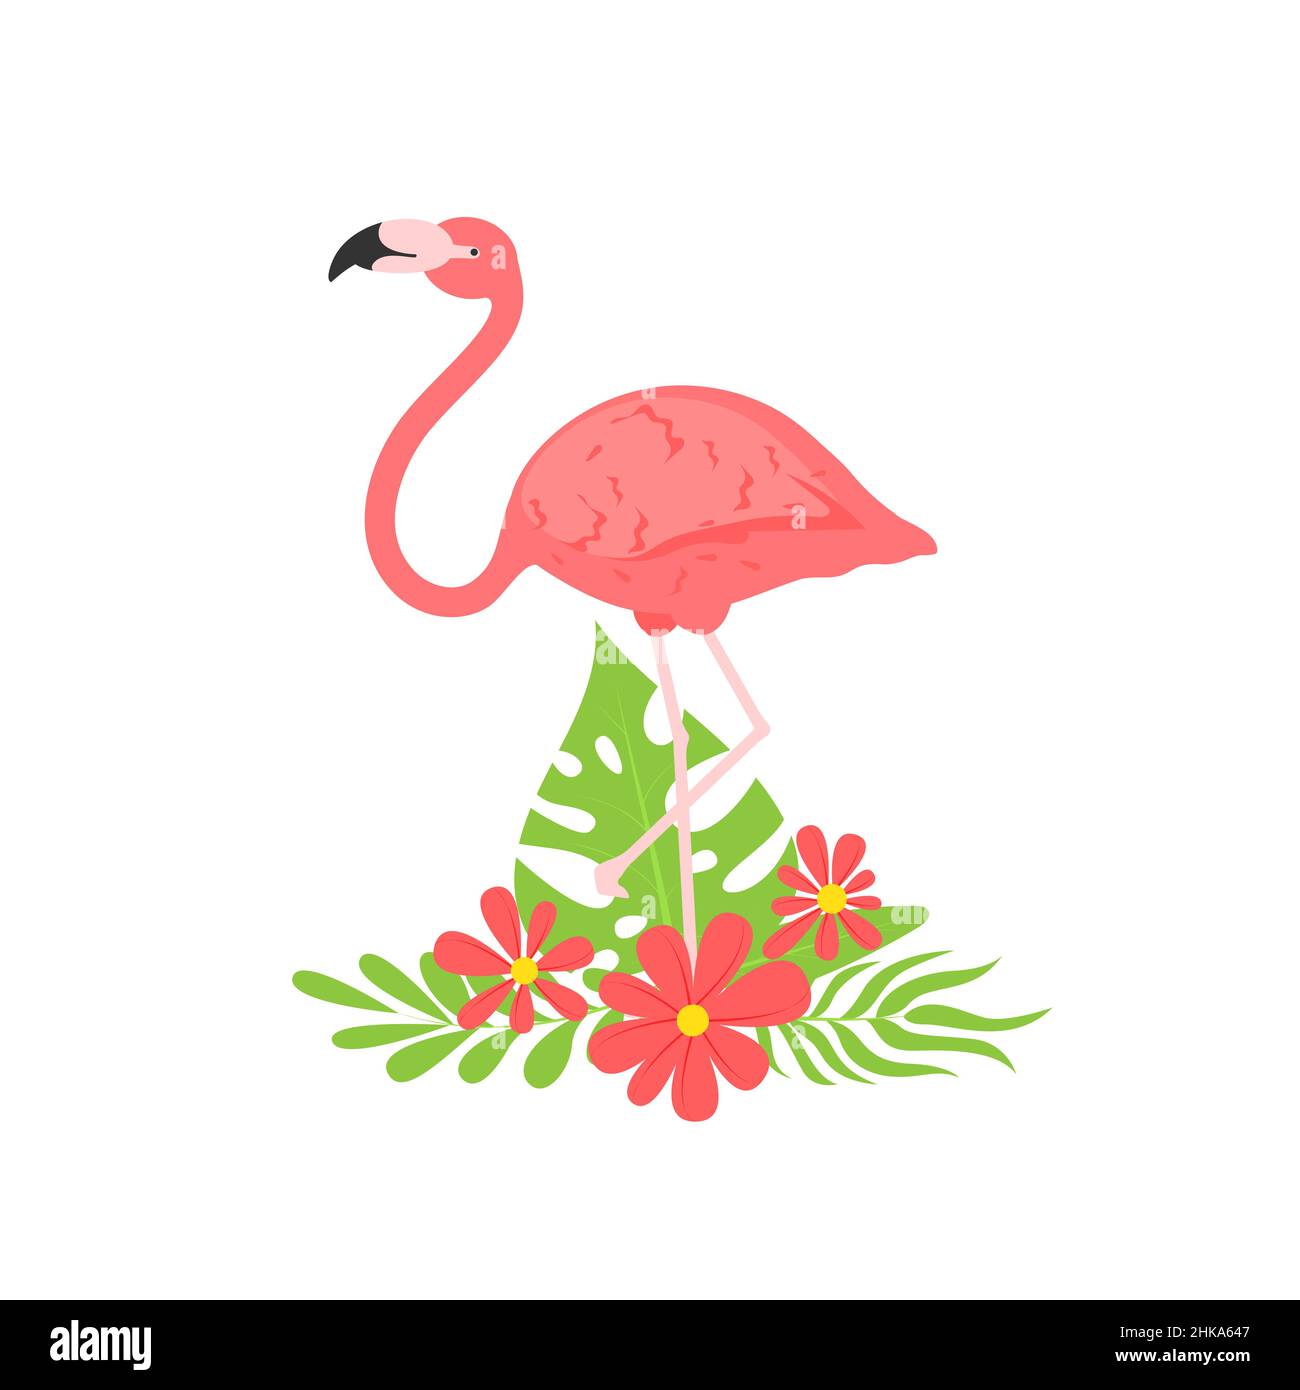 Ilustración vectorial de un flamenco rosa. Flamingo Belleza tropical africana de animales exóticos. Diseño elegante y sencillo. Flamenco rosa aislado en flores Ilustración del Vector